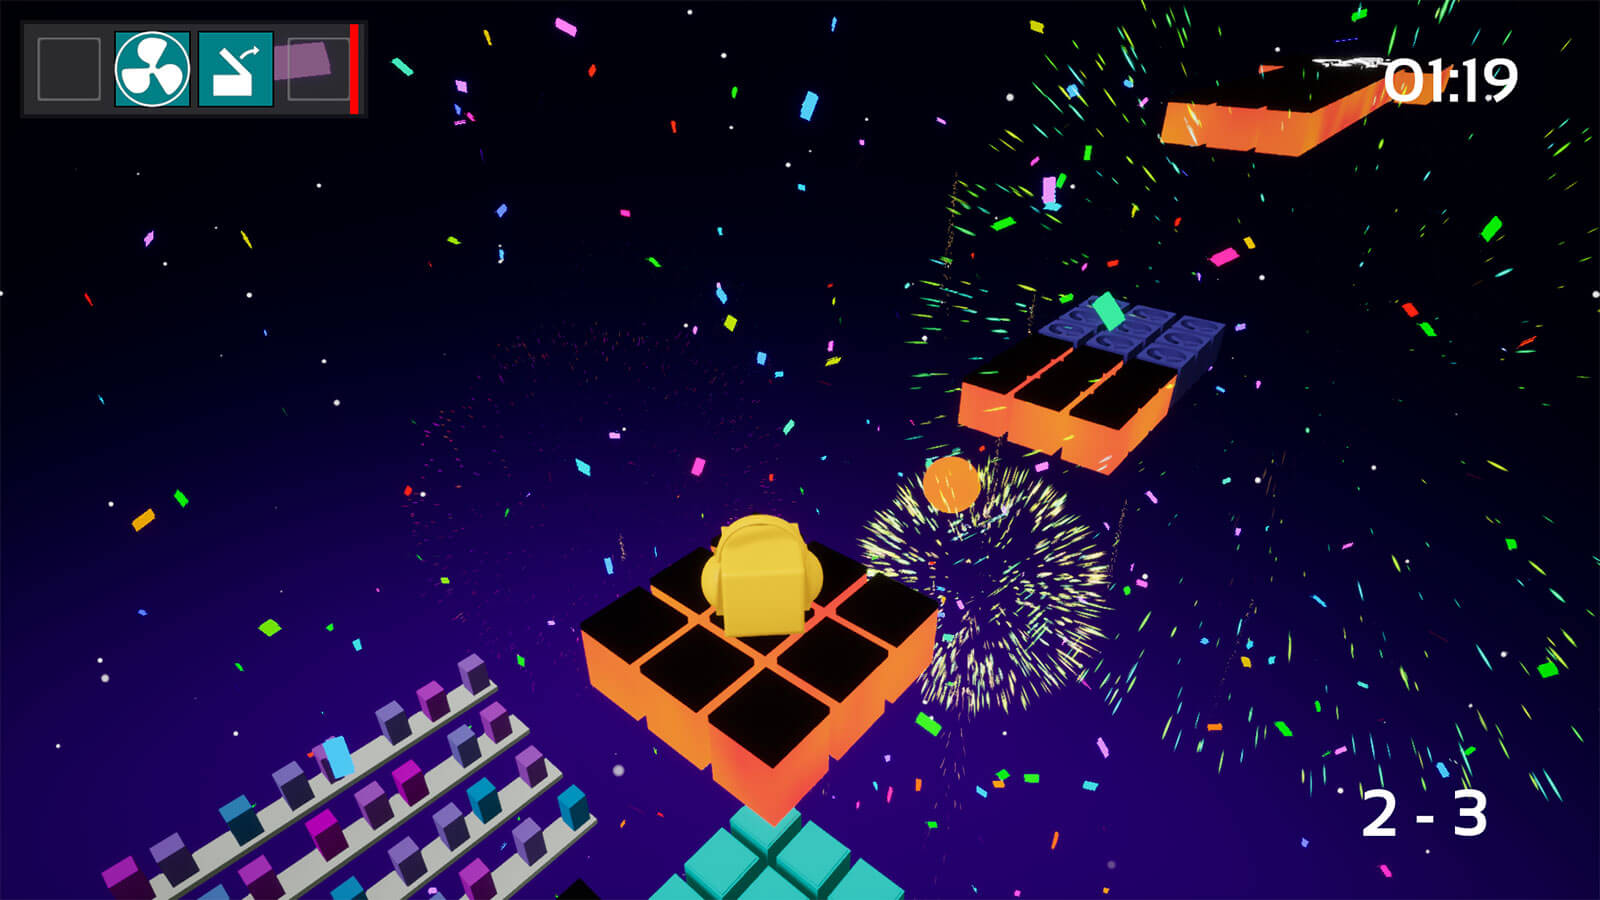 Un bloque dorado se mueve sobre una plataforma con fuegos artificiales multicolores explotando al fondo